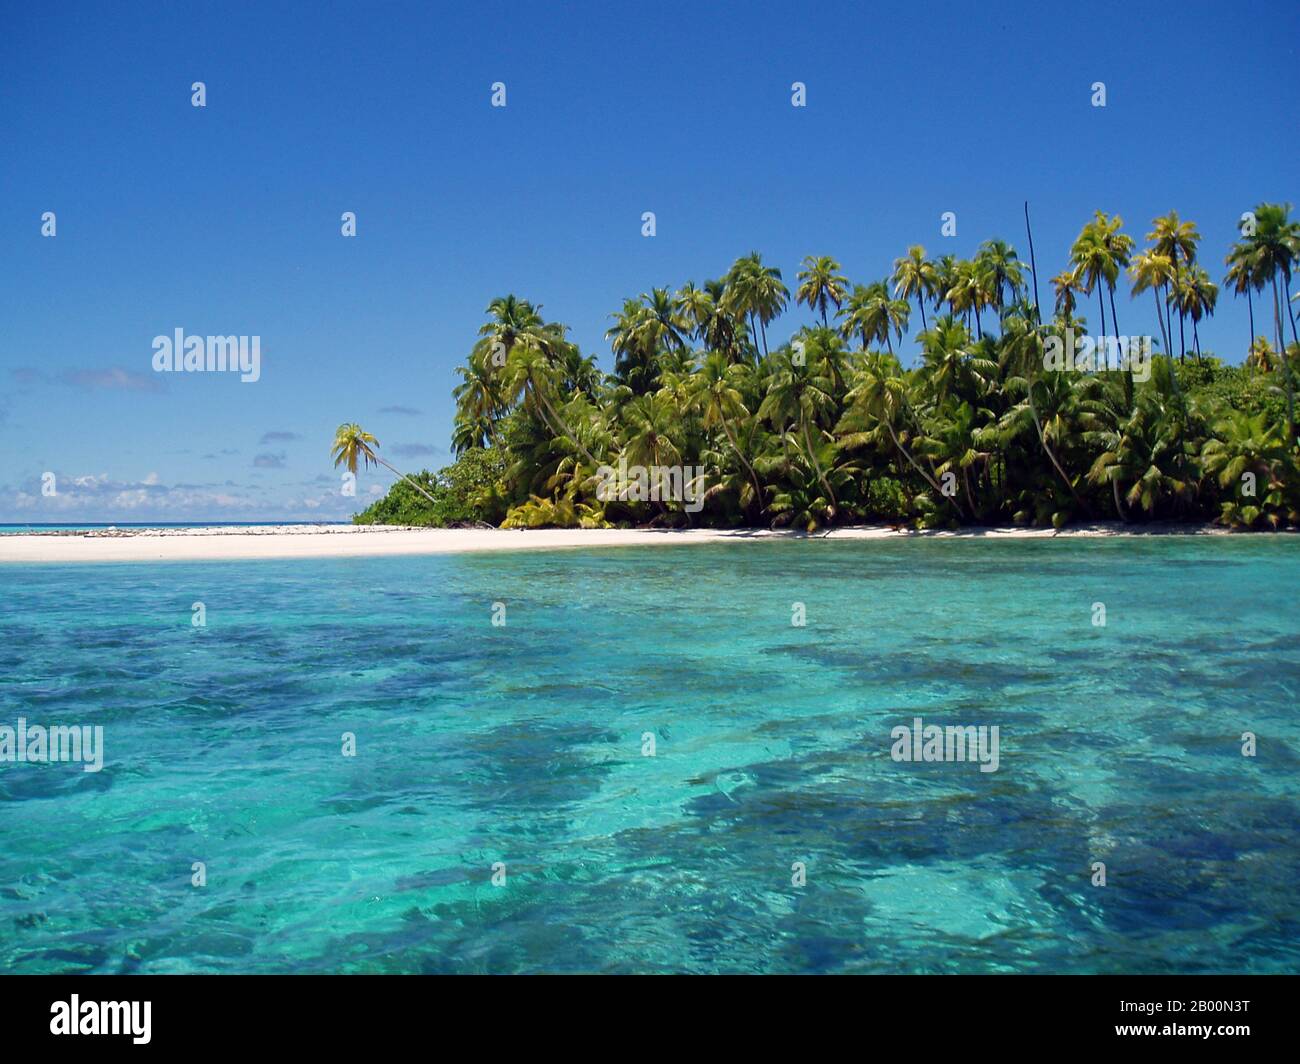 BIOT (territorio britannico dell'Oceano Indiano): Atollo di Salomons, foto di Anne Sheppard (CC DA 3.0 licenza). Il territorio britannico dell'Oceano Indiano (BIOT) o delle Isole Chagos (ex Isole del petrolio) è un territorio d'oltremare del Regno Unito situato nell'Oceano Indiano, a metà strada tra l'Africa e l'Indonesia. Il territorio comprende un gruppo di sette atolli che comprende più di 60 singole isole, situate a circa 500 chilometri (310 miglia) a sud dell'arcipelago delle Maldive. L'isola più grande è Diego Garcia (area 44 km quadrati), il sito di una struttura militare congiunta del Regno Unito e degli Stati Uniti. Foto Stock